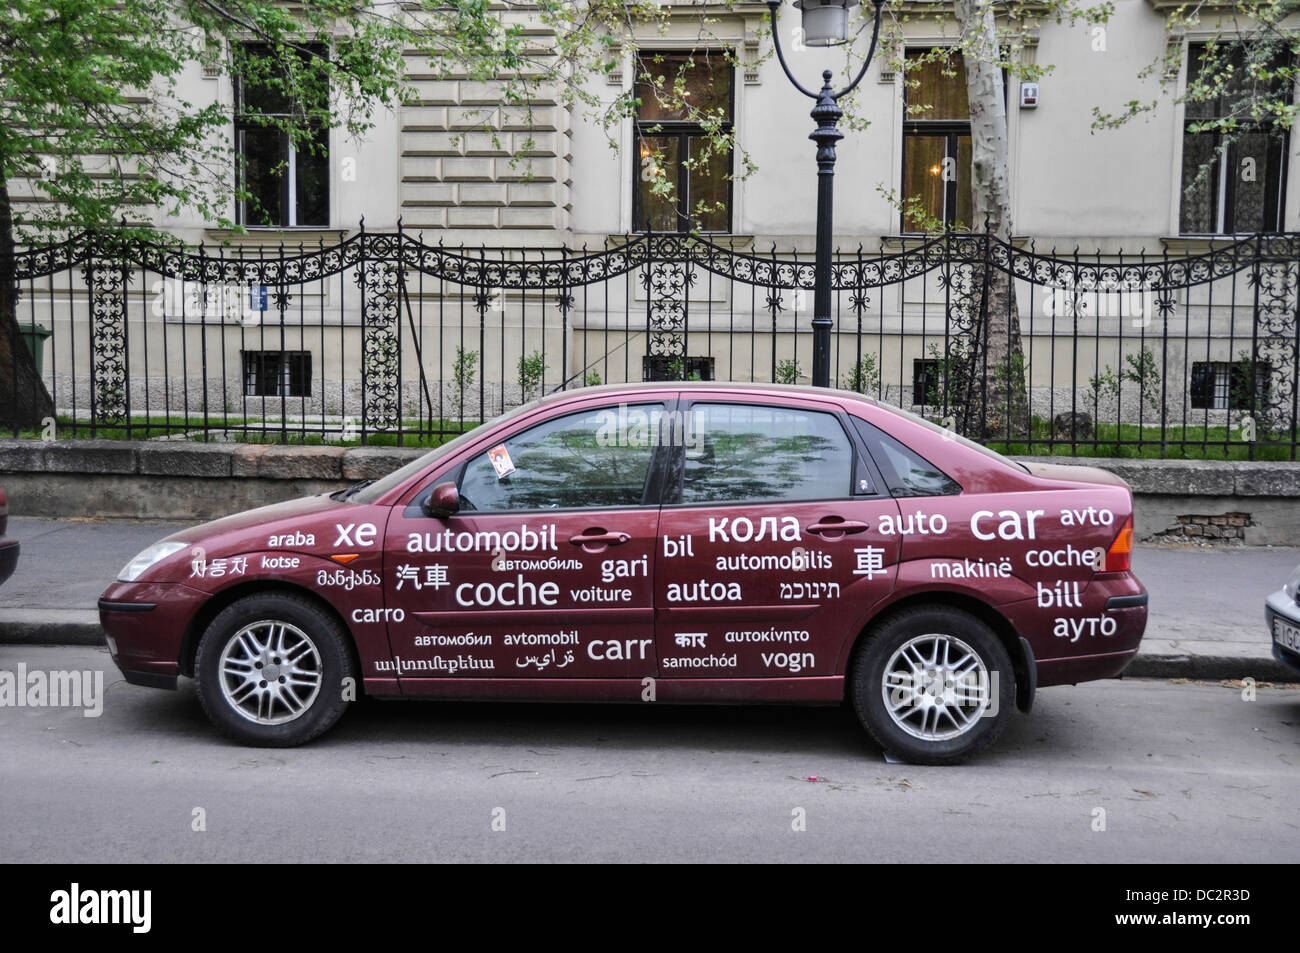 Mehrsprachige Auto. Ein Auto mit "Auto" in vielen Sprachen geschrieben. Fotografiert in Budapest, Ungarn Stockfoto